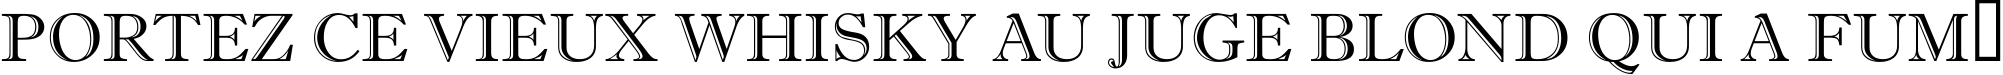 Пример написания шрифтом a_AntiqueTitulGr текста на французском